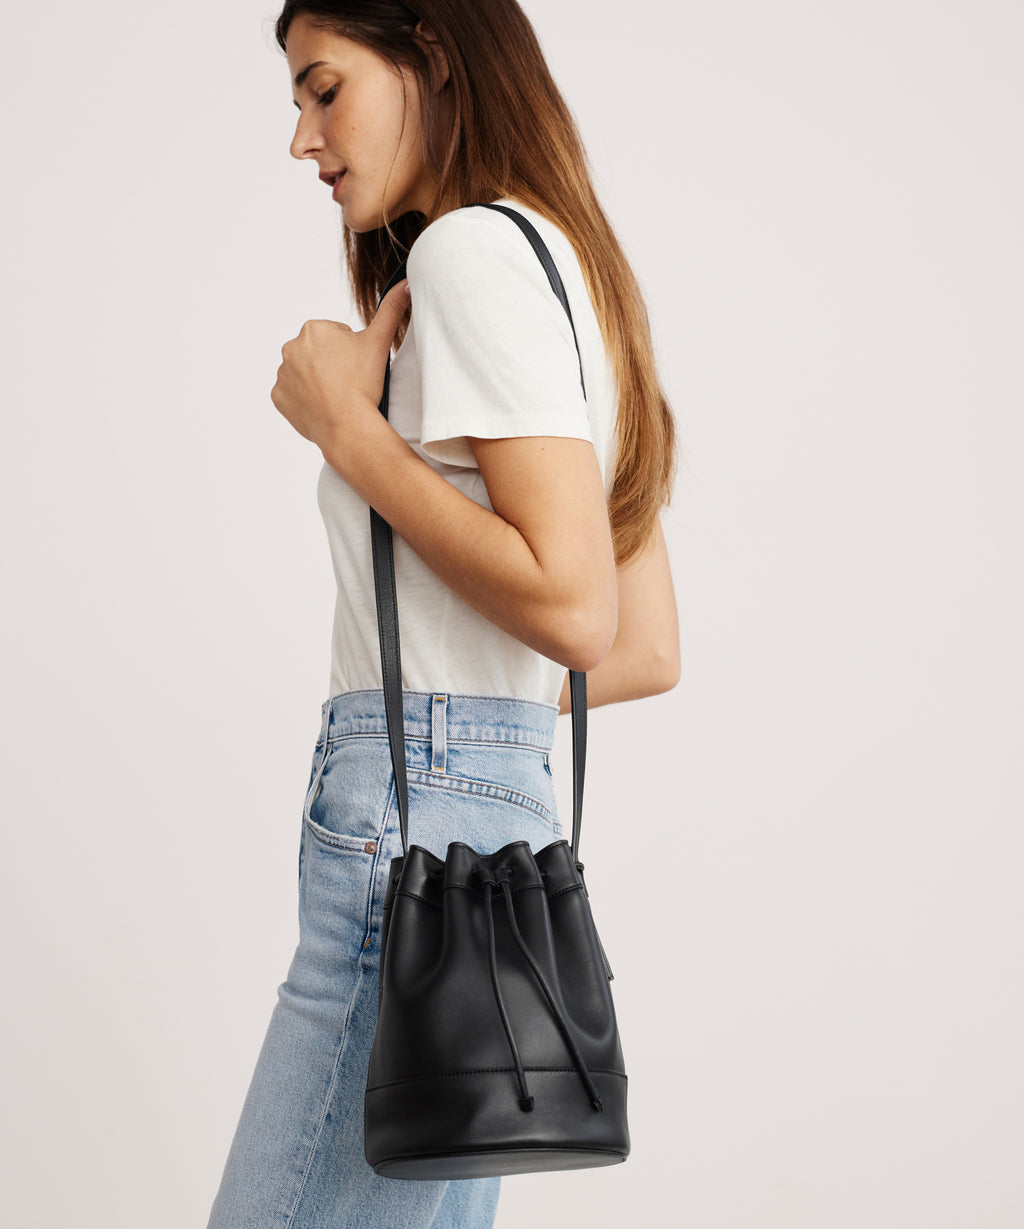 Buy KLEIO Faux Leather Solid Color Short Strap Shoulder Handbag for Women  Girls - Pink online